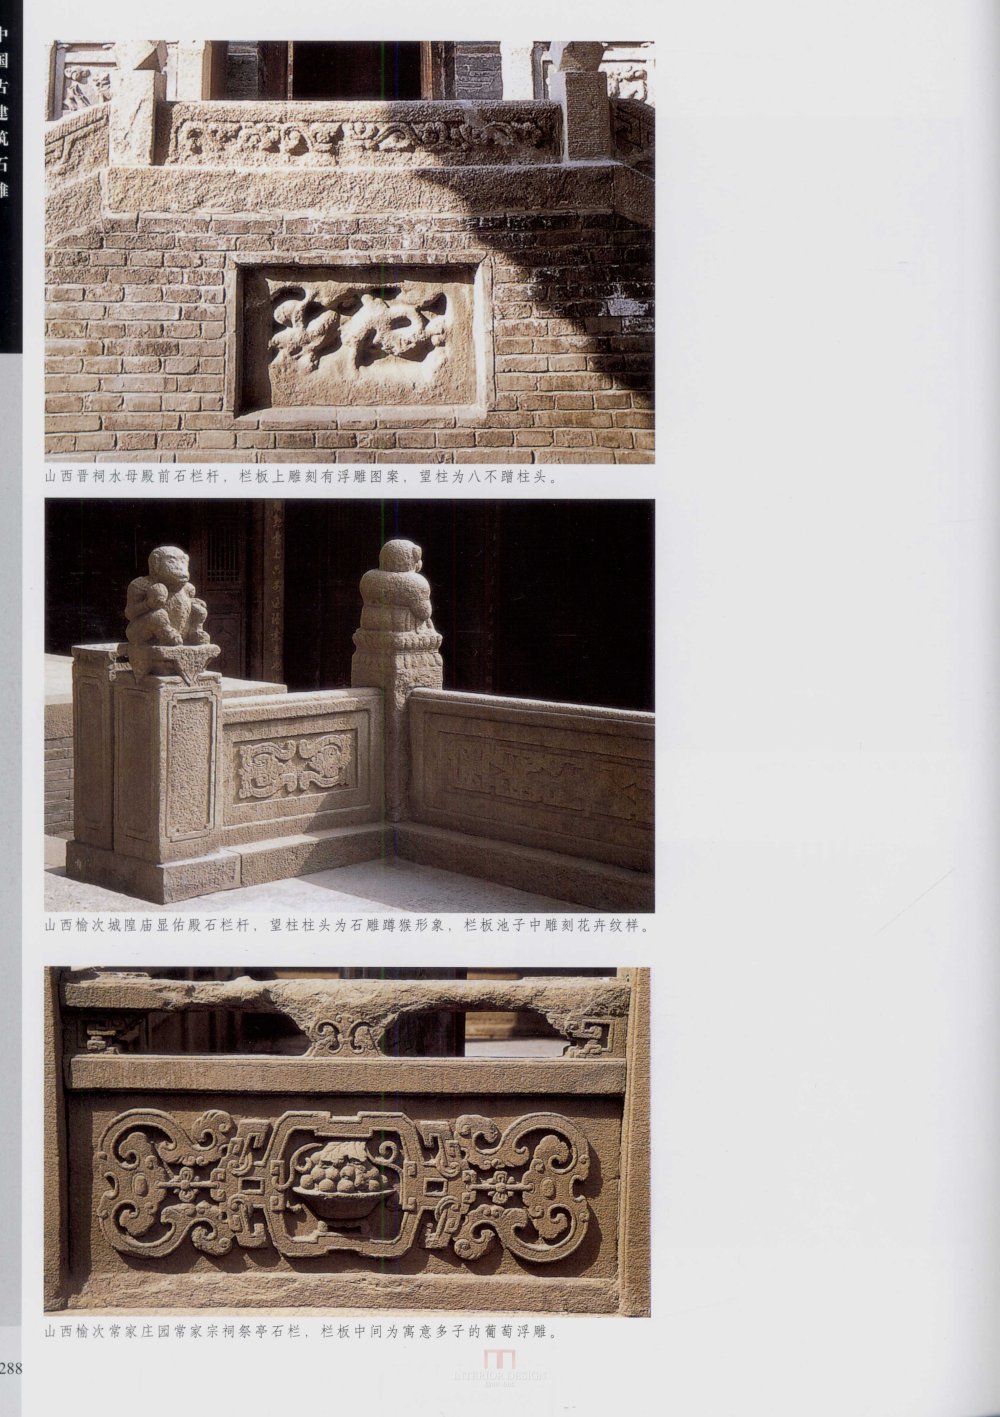 中国古代建筑 石雕_kobe 0295.jpg